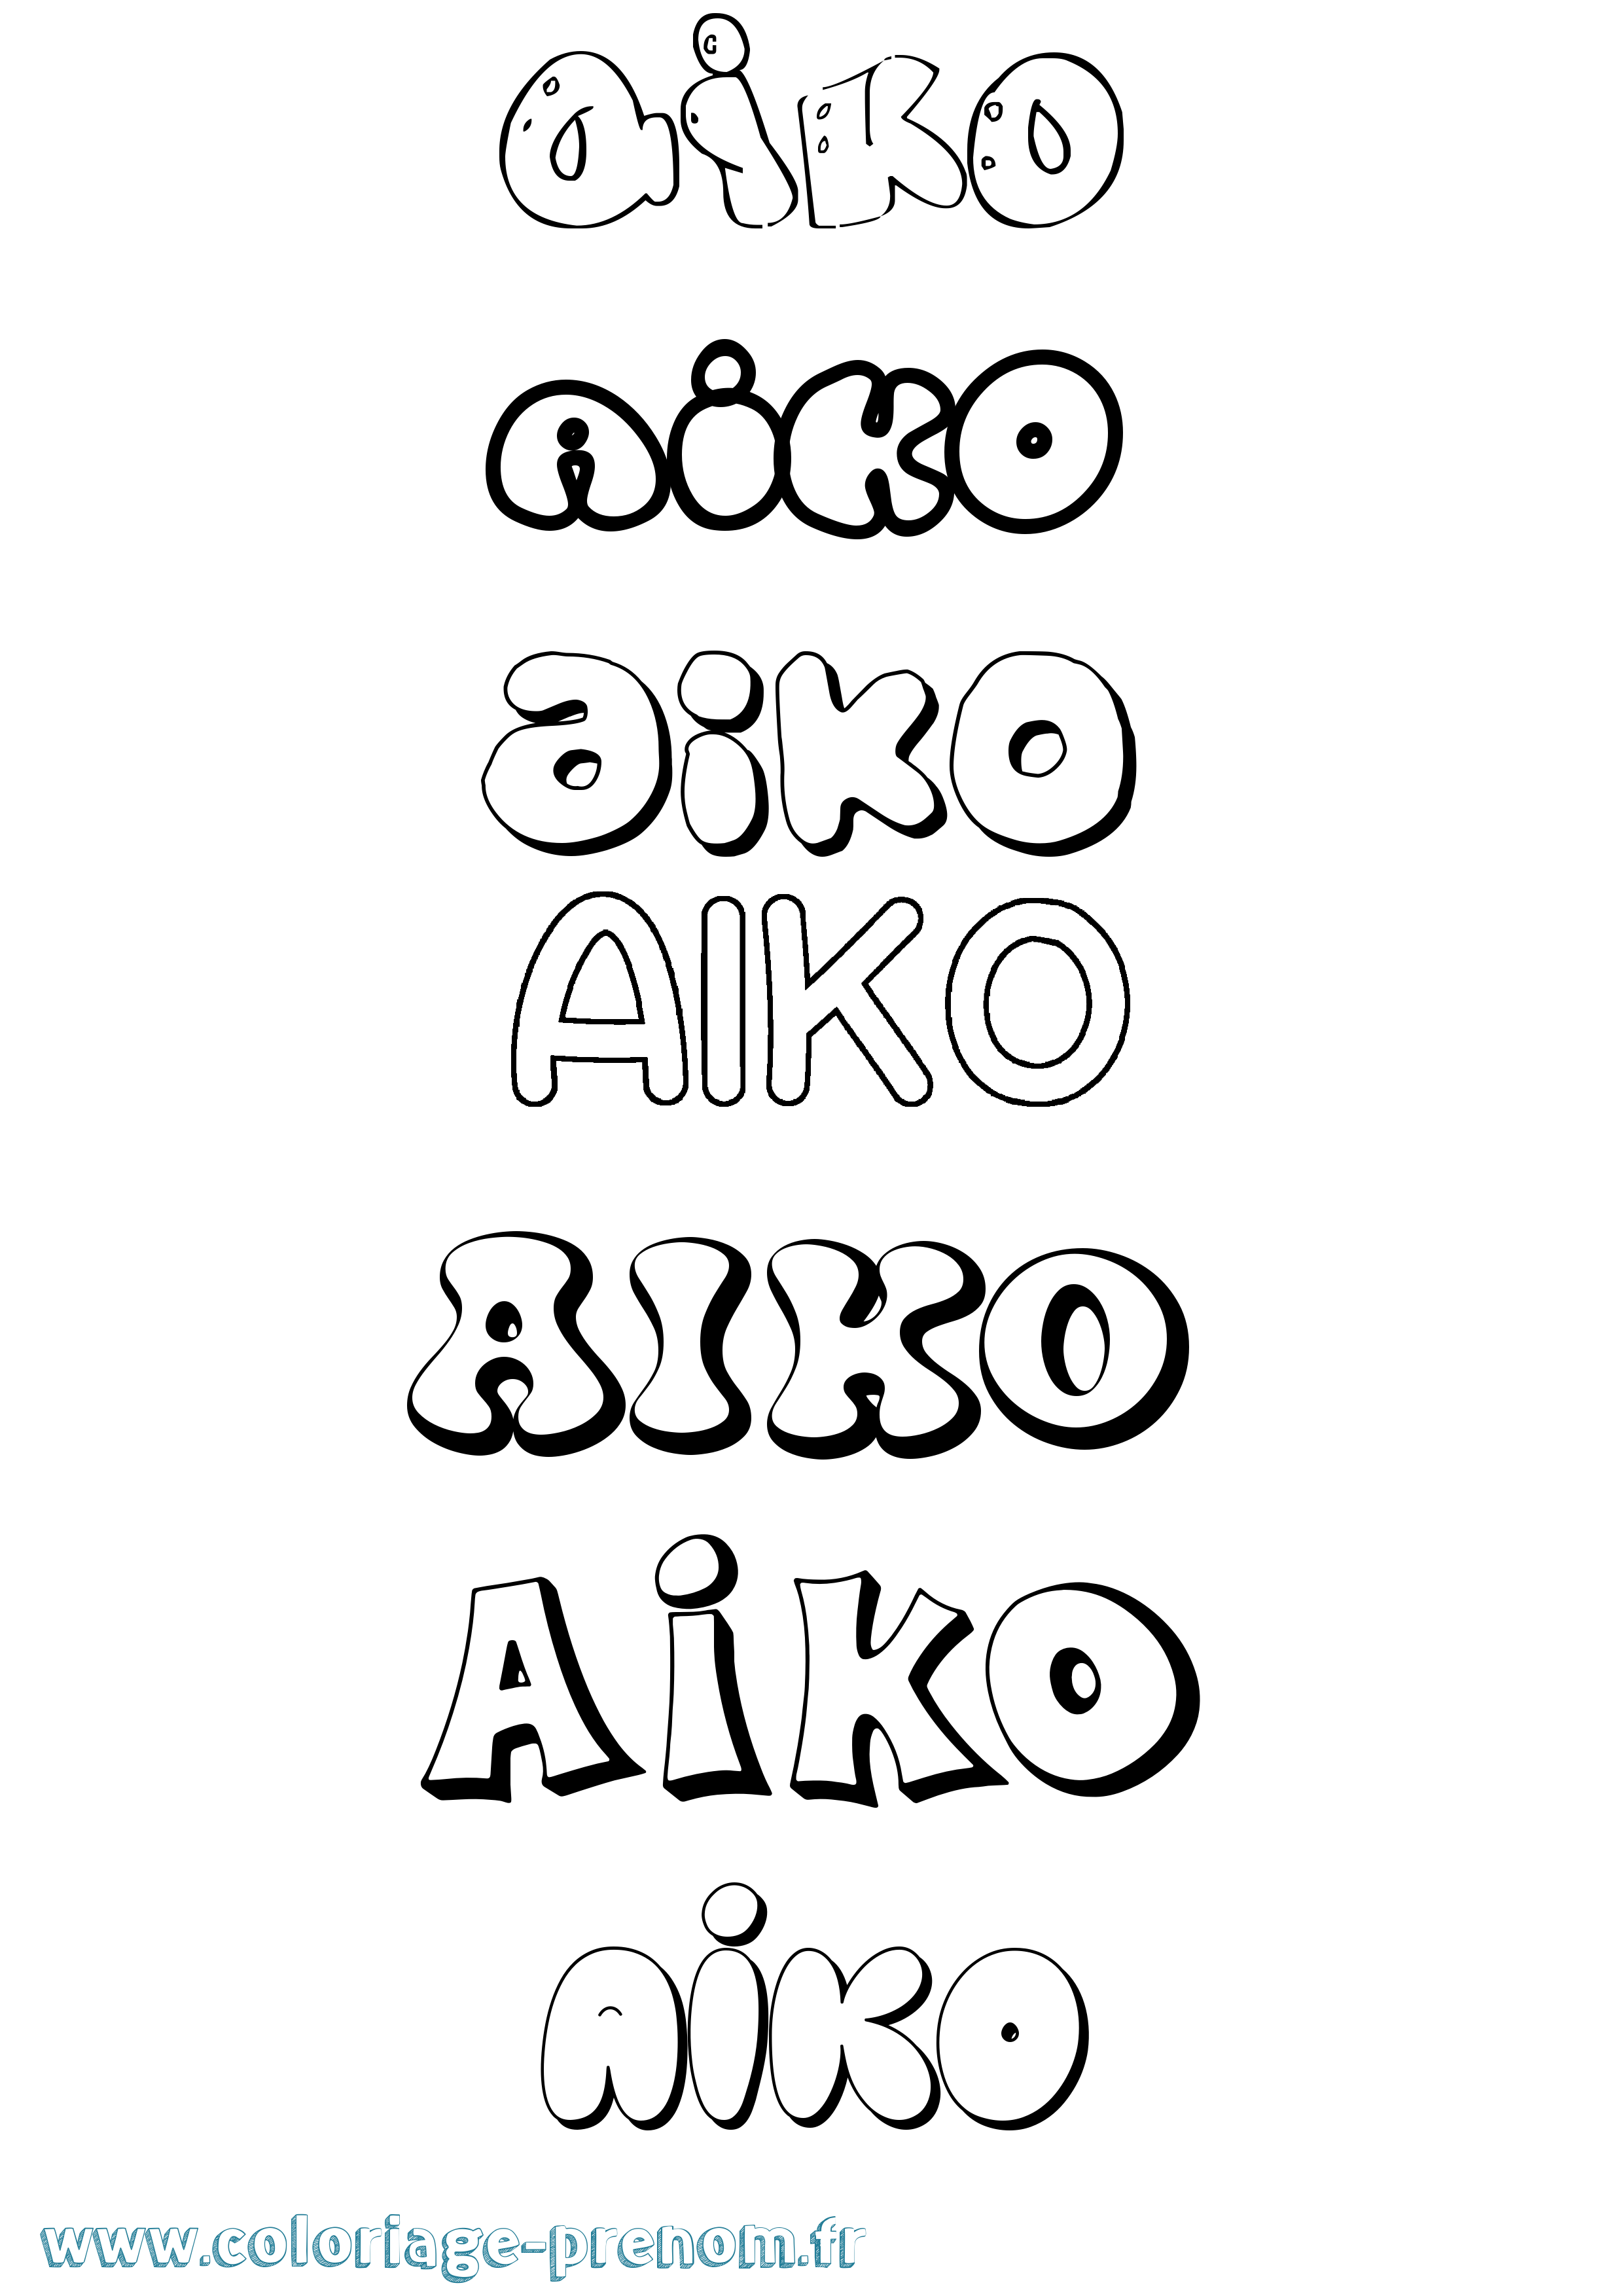 Coloriage prénom Aiko Bubble